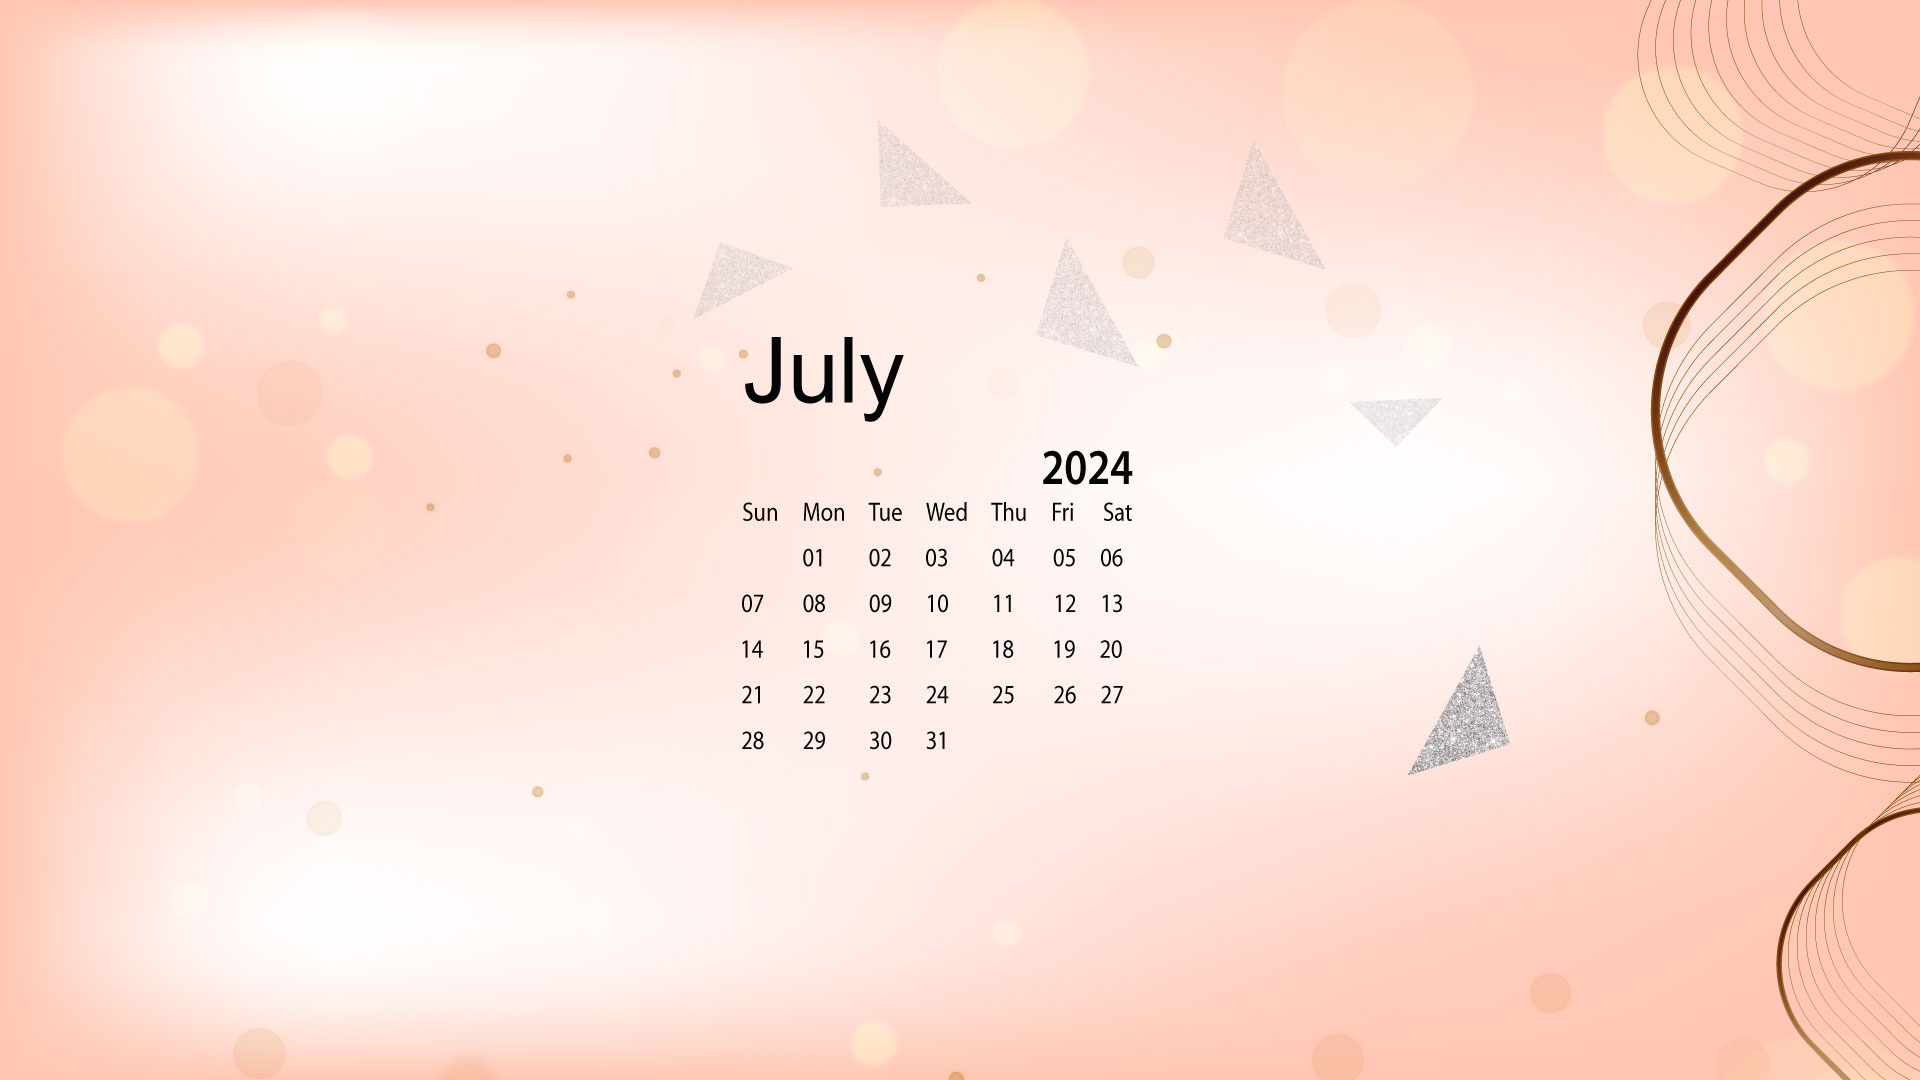 July 2024 Desktop Wallpaper Calendar - Calendarlabs in July 2024 Desktop Wallpaper Calendar